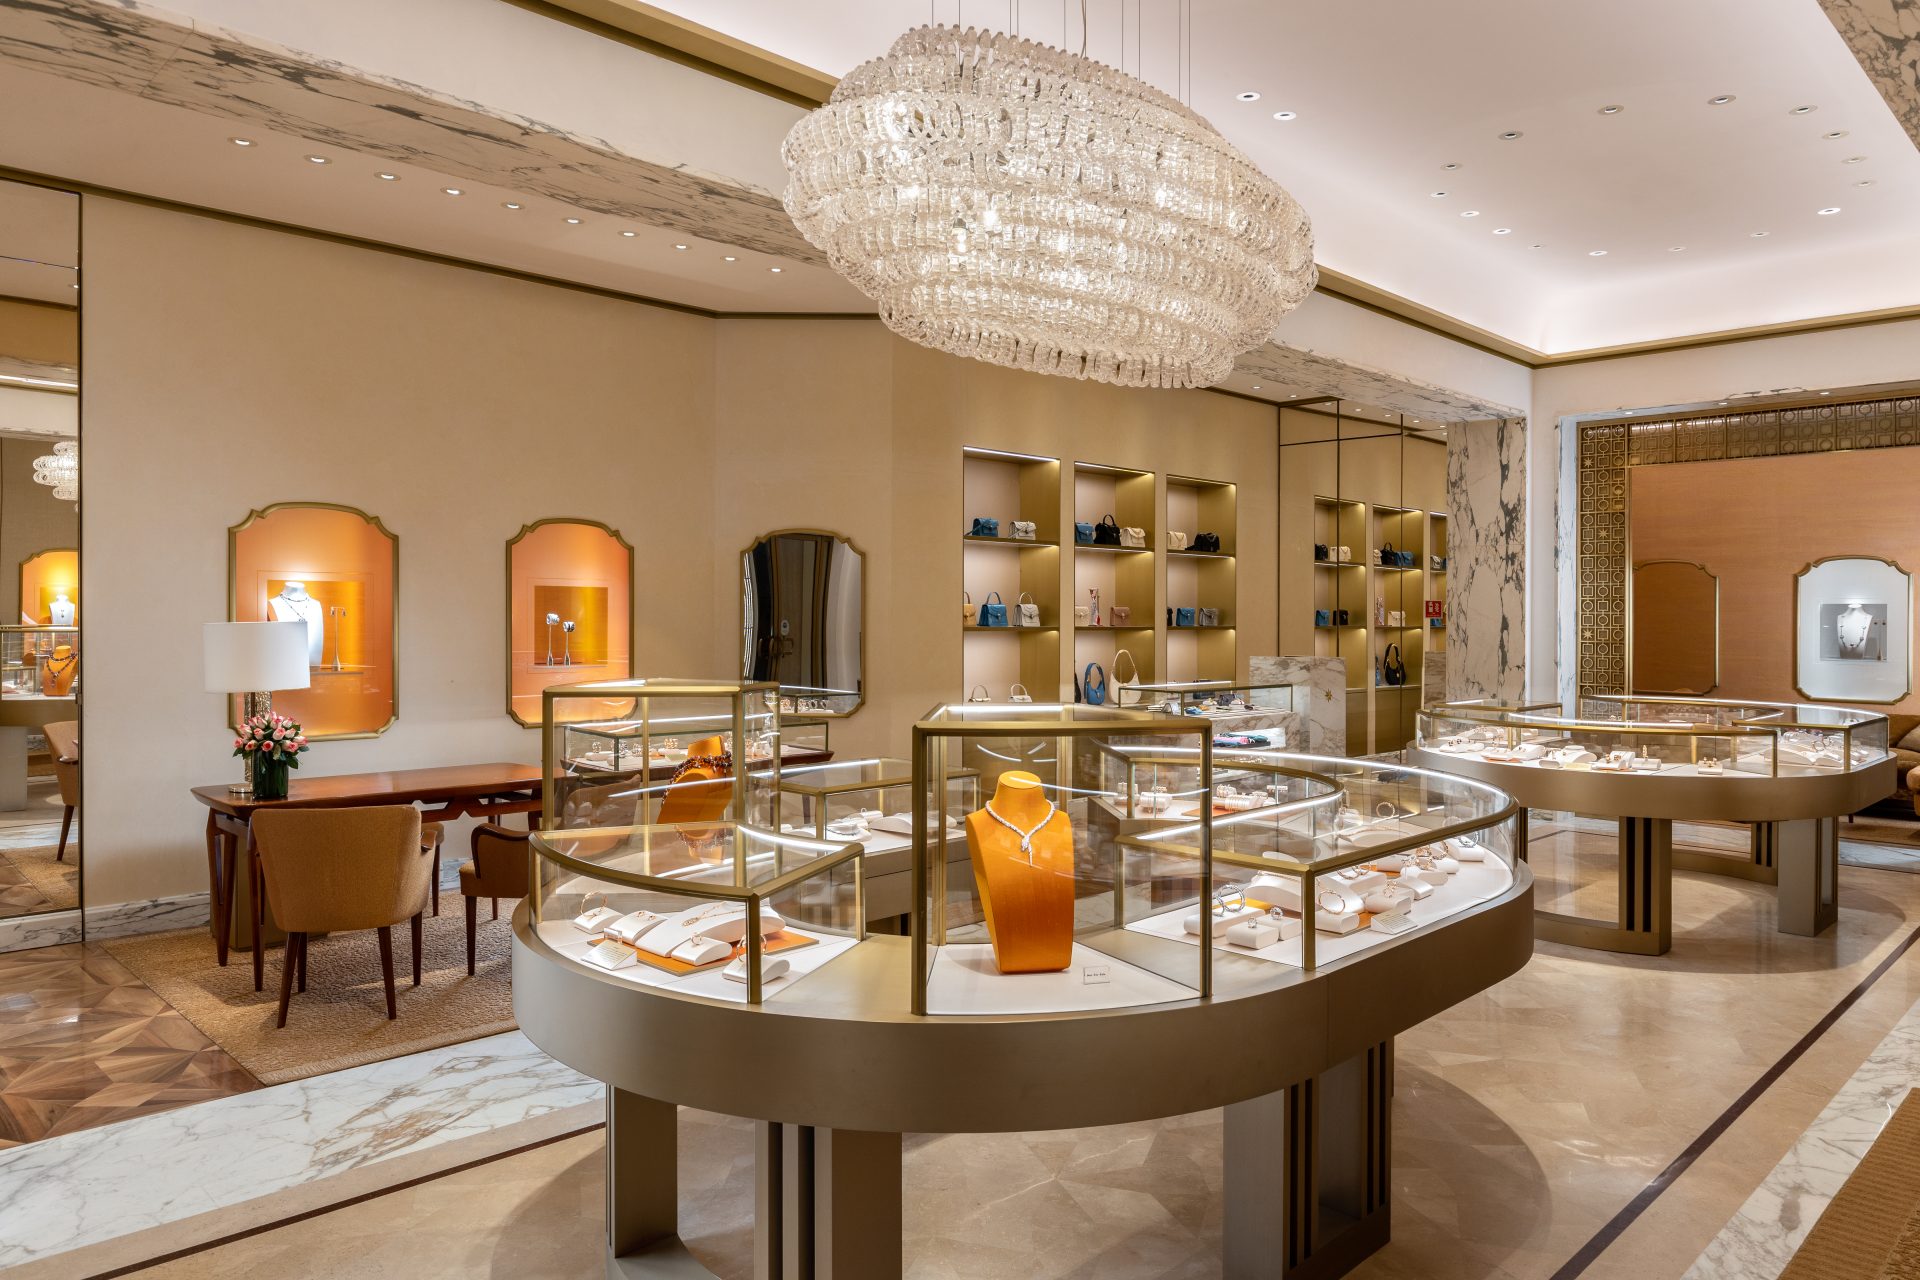 Bulgari opens a new boutique at Place Vendôme